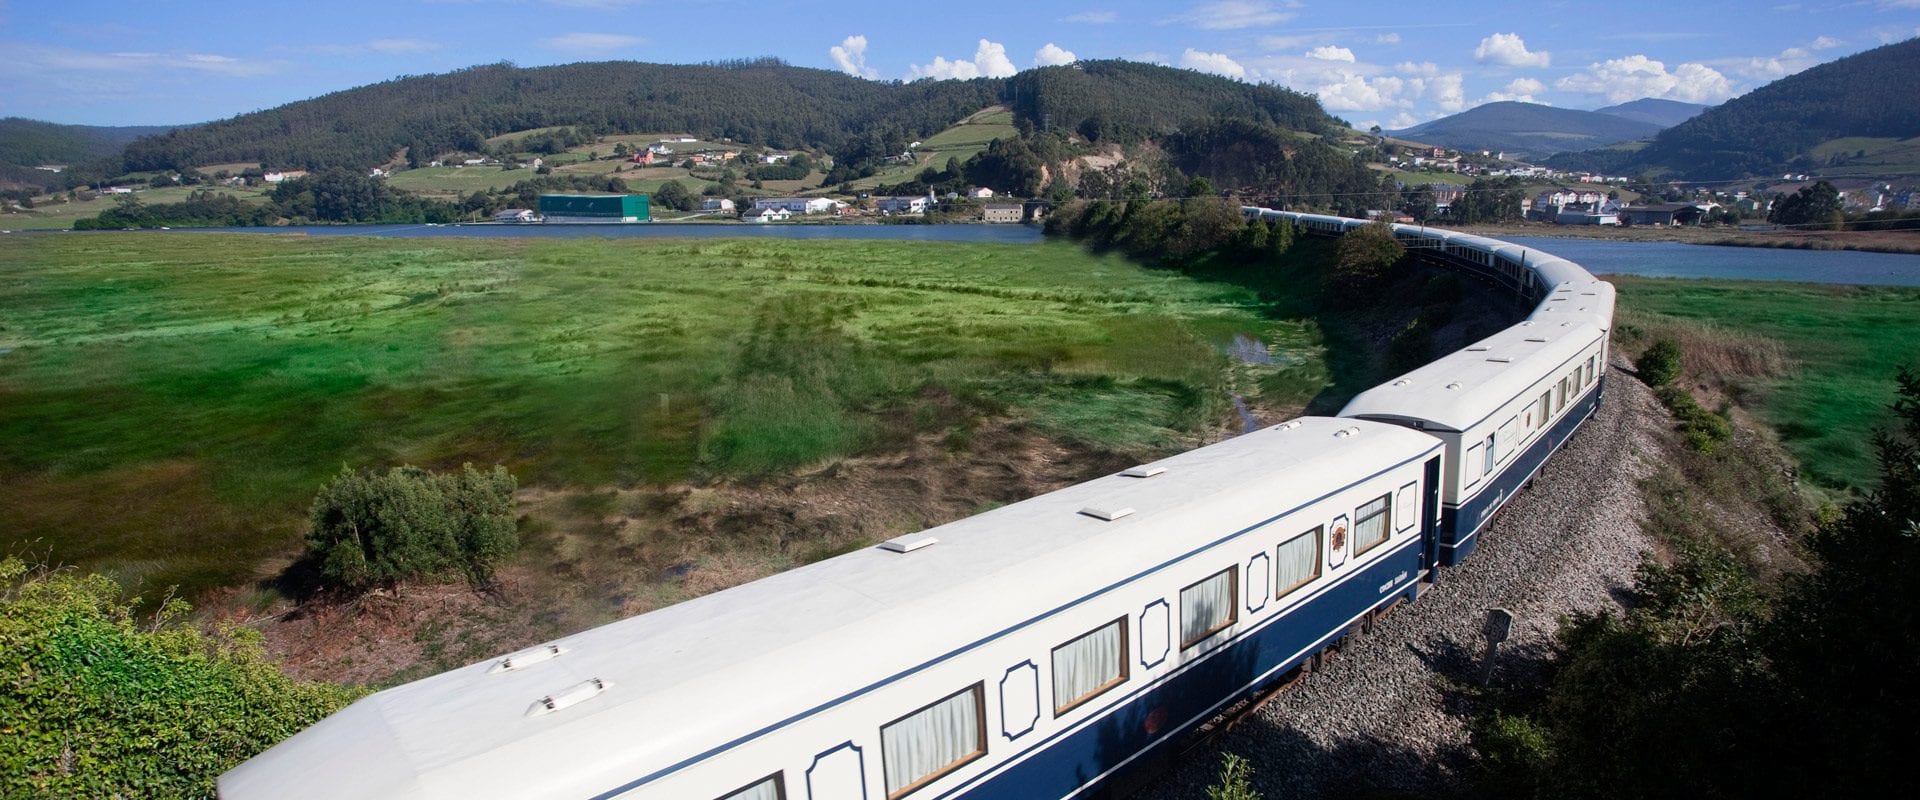 3 viagens incríveis a bordo de luxuosos trens na Espanha